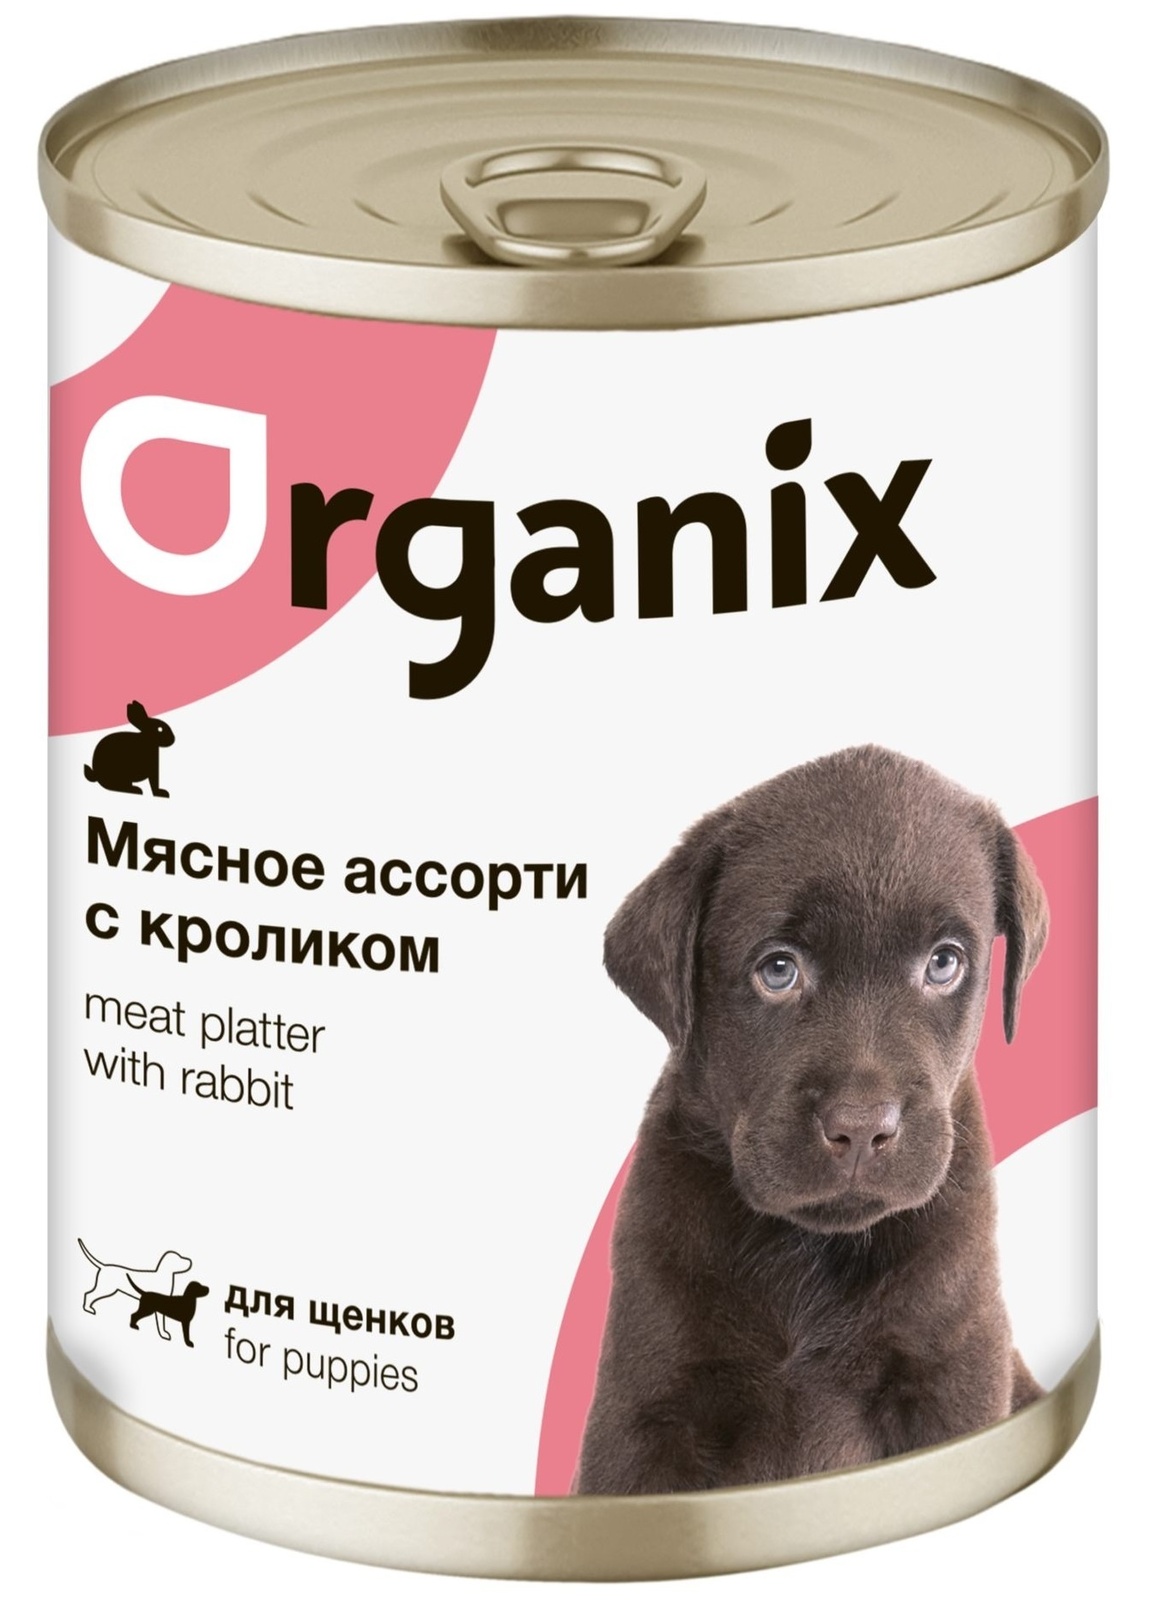 Organix консервы Organix консервы для щенков Мясное ассорти с кроликом (100 г) organix консервы organix консервы для щенков мясное ассорти с кроликом 100 г